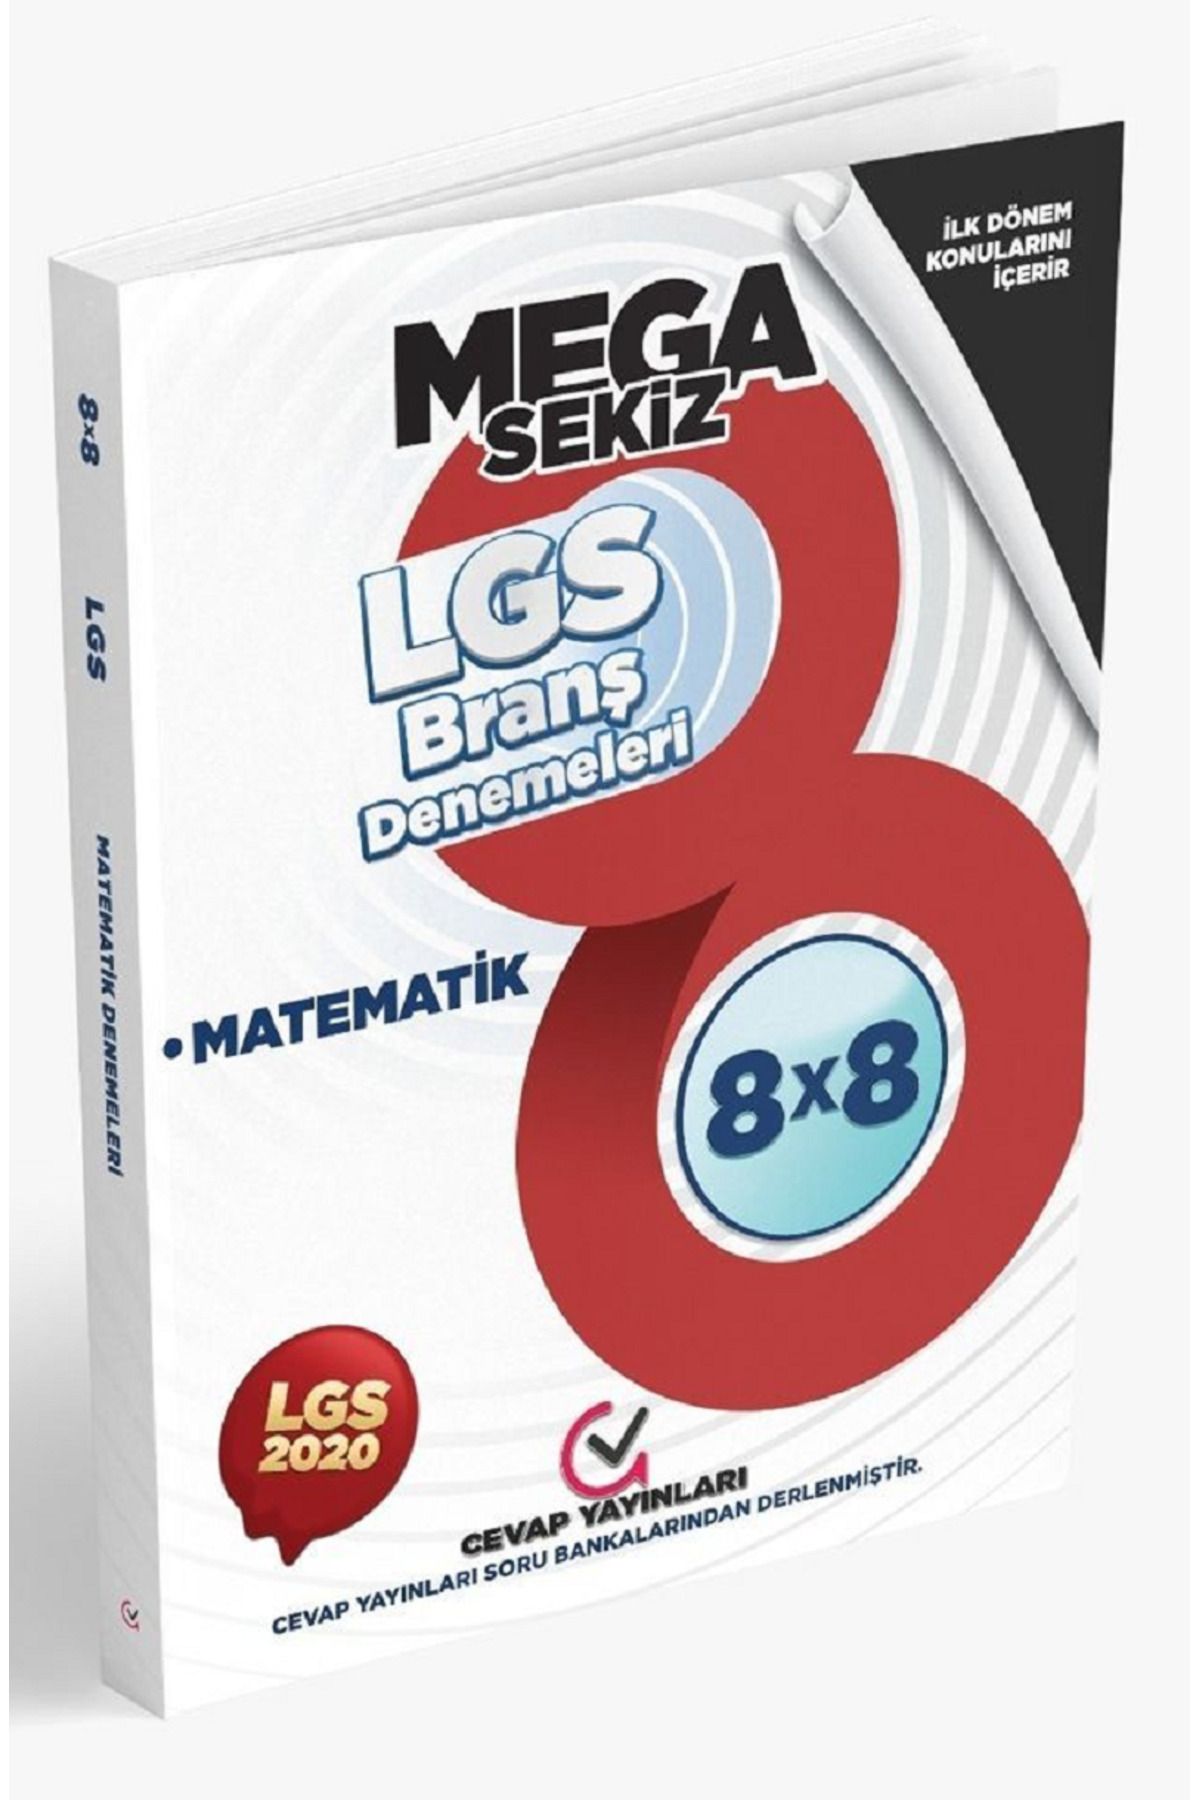 Cevap Yayınları Eski Baskı Güncel İçerik 8.Sınıf LGS İlk Dönem Mega 8'li Matematik Denemeleri Cevap Yayınları